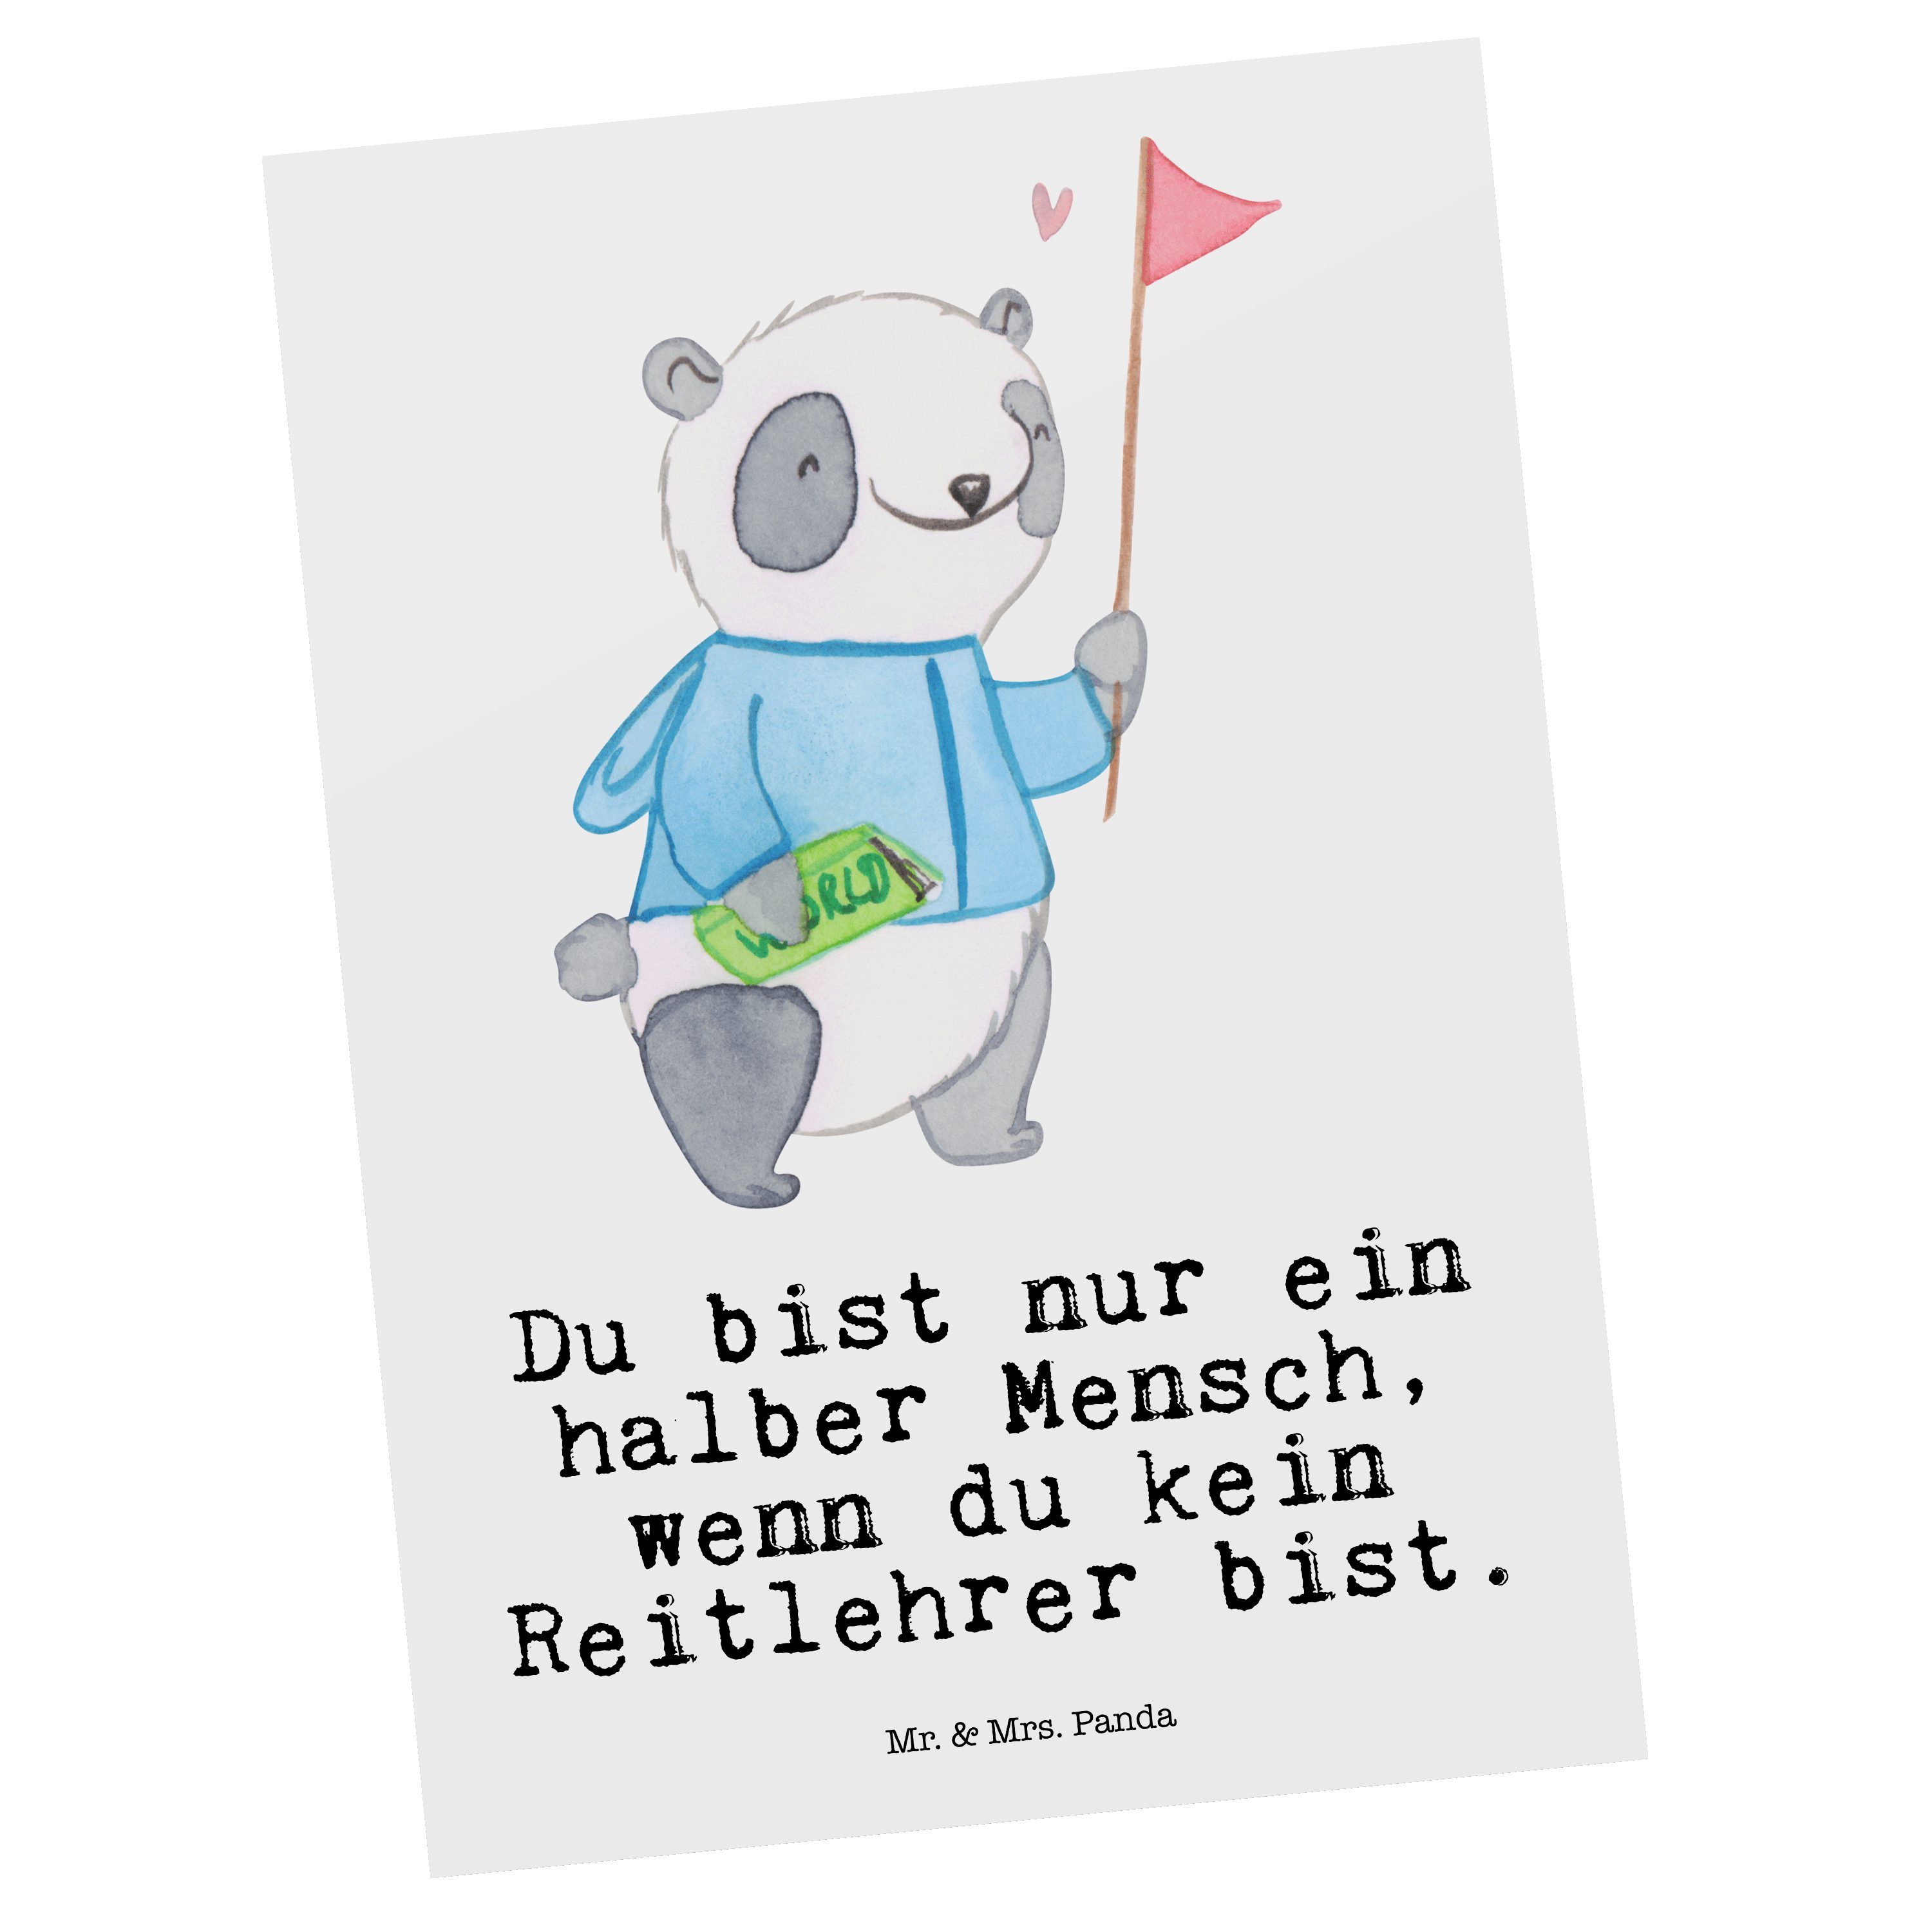 Mr. & Mrs. Panda Postkarte Reitlehrer mit Herz - Weiß - Geschenk, Danke, Grußkarte, Karte, Mitar